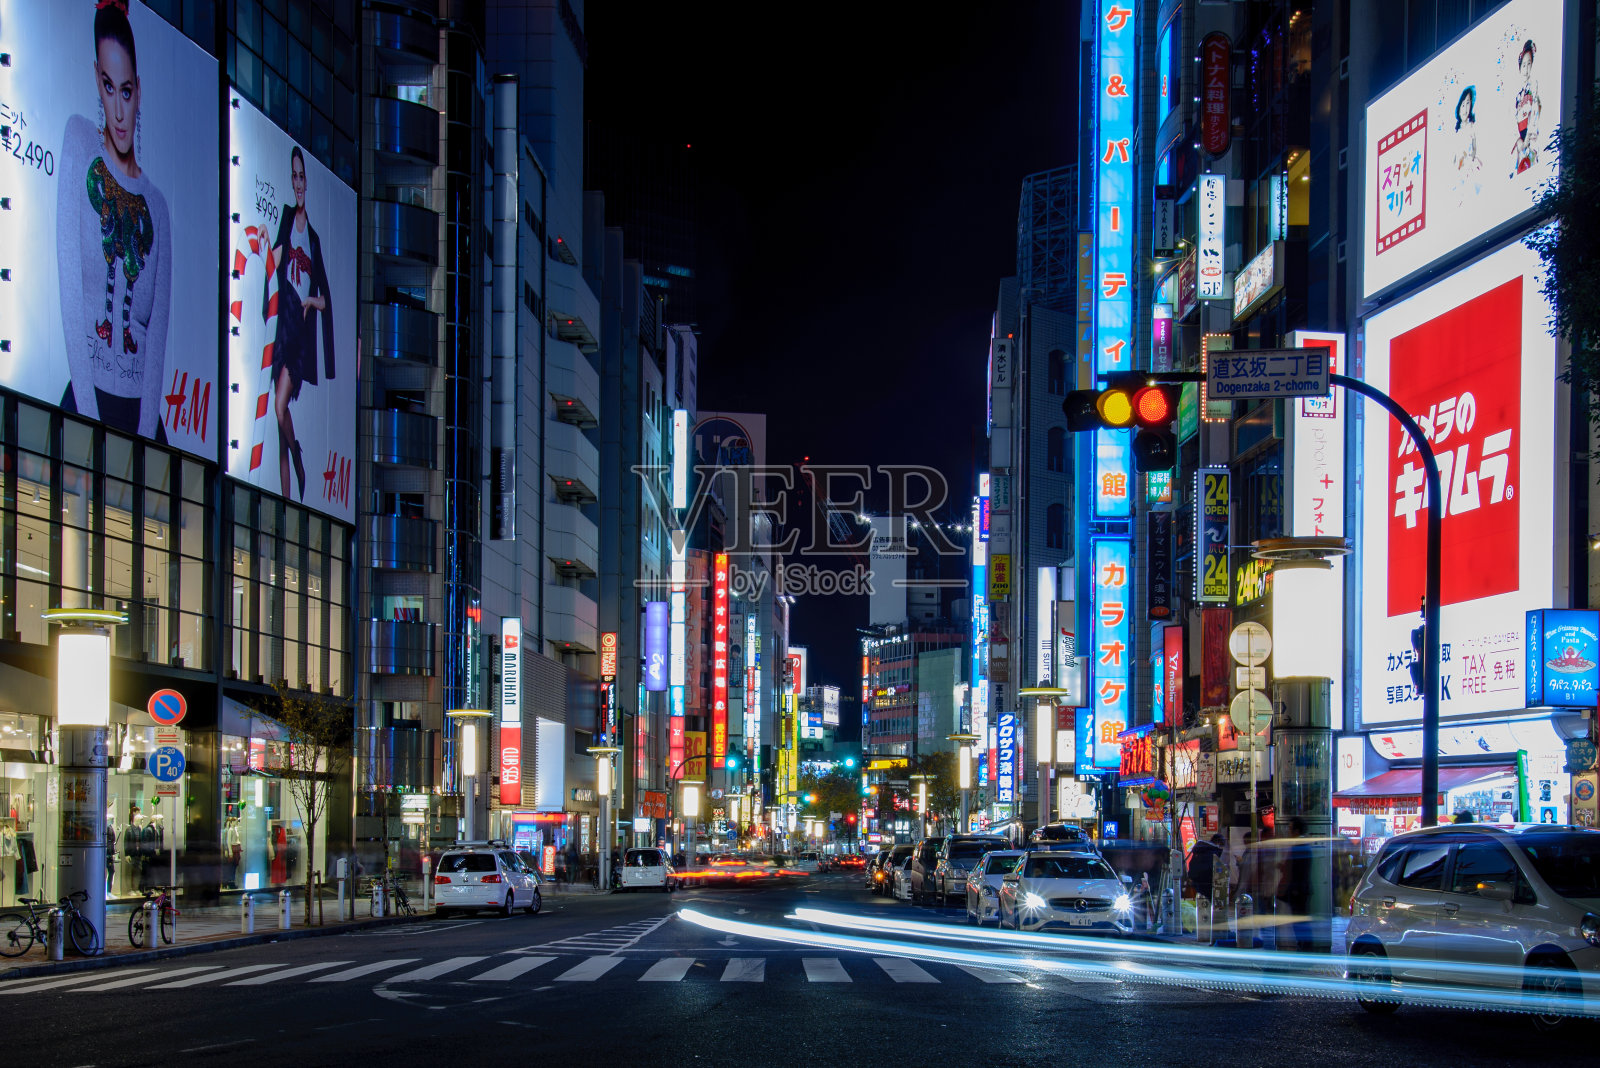 涩谷街之夜照片摄影图片